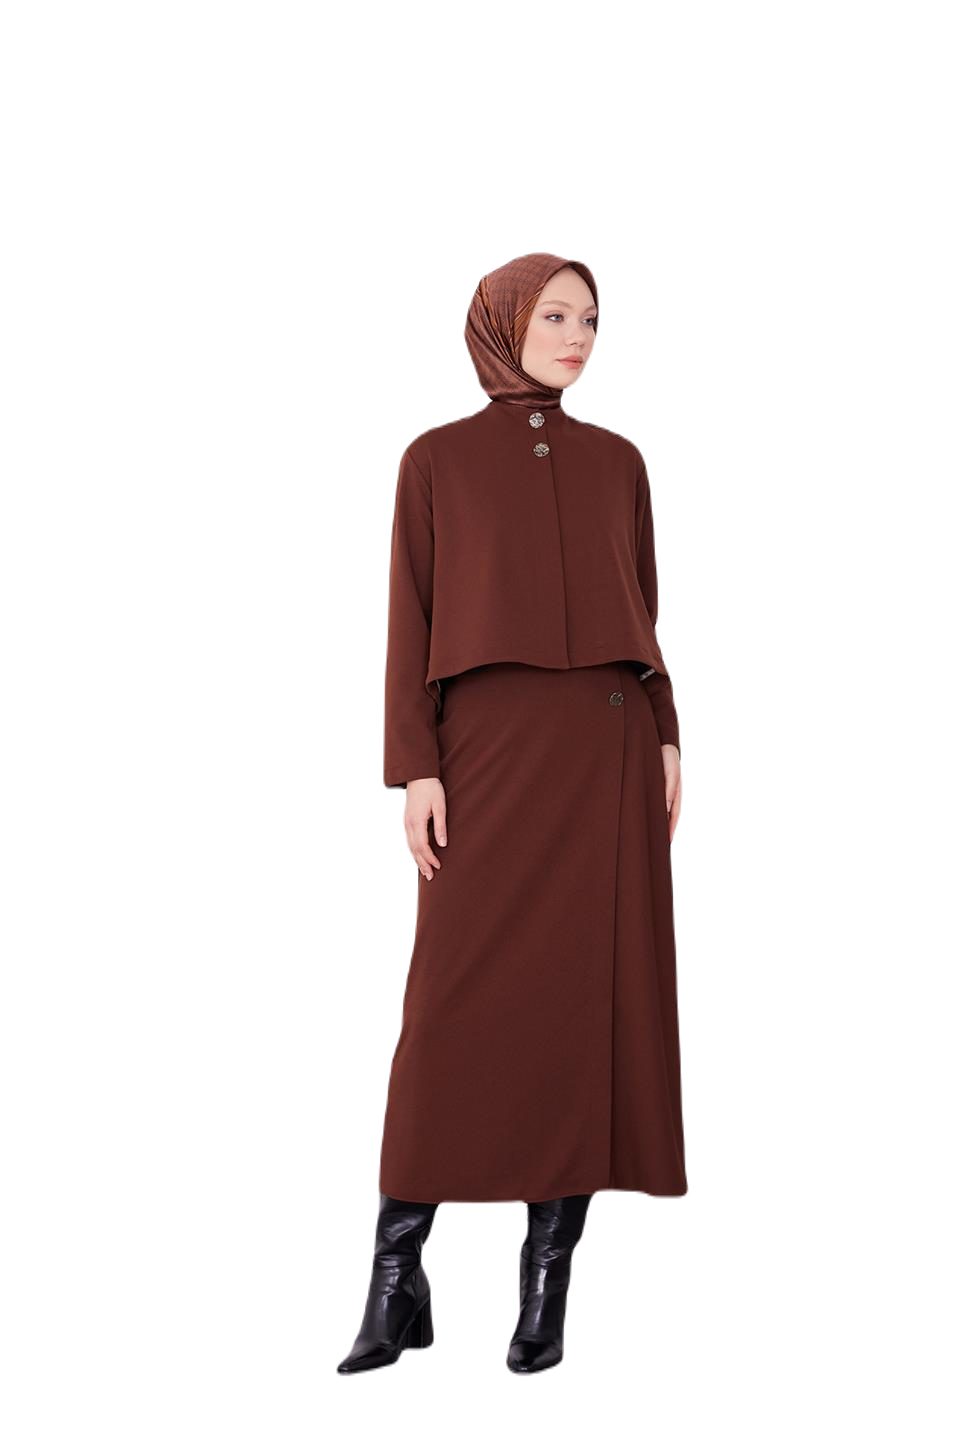 ARMİNE Business-Kostüm Armine gepolsterter Rockanzug – moderne und elegante Hijab-Mode